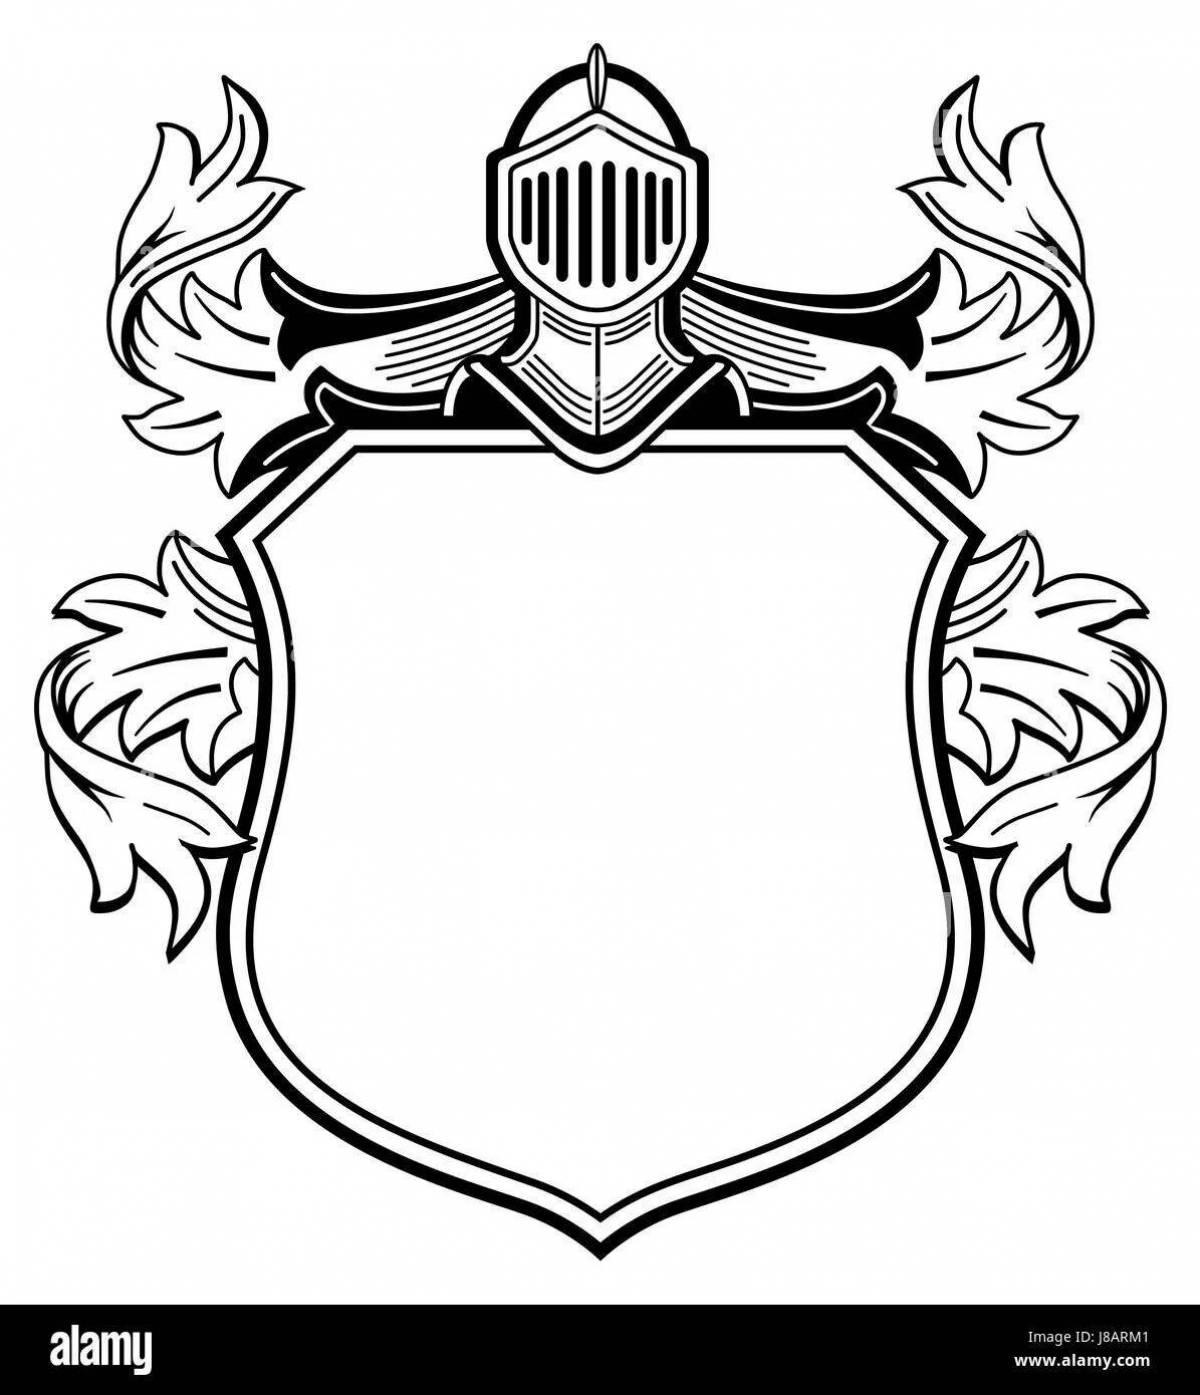 Большая раскраска рыцарский герб